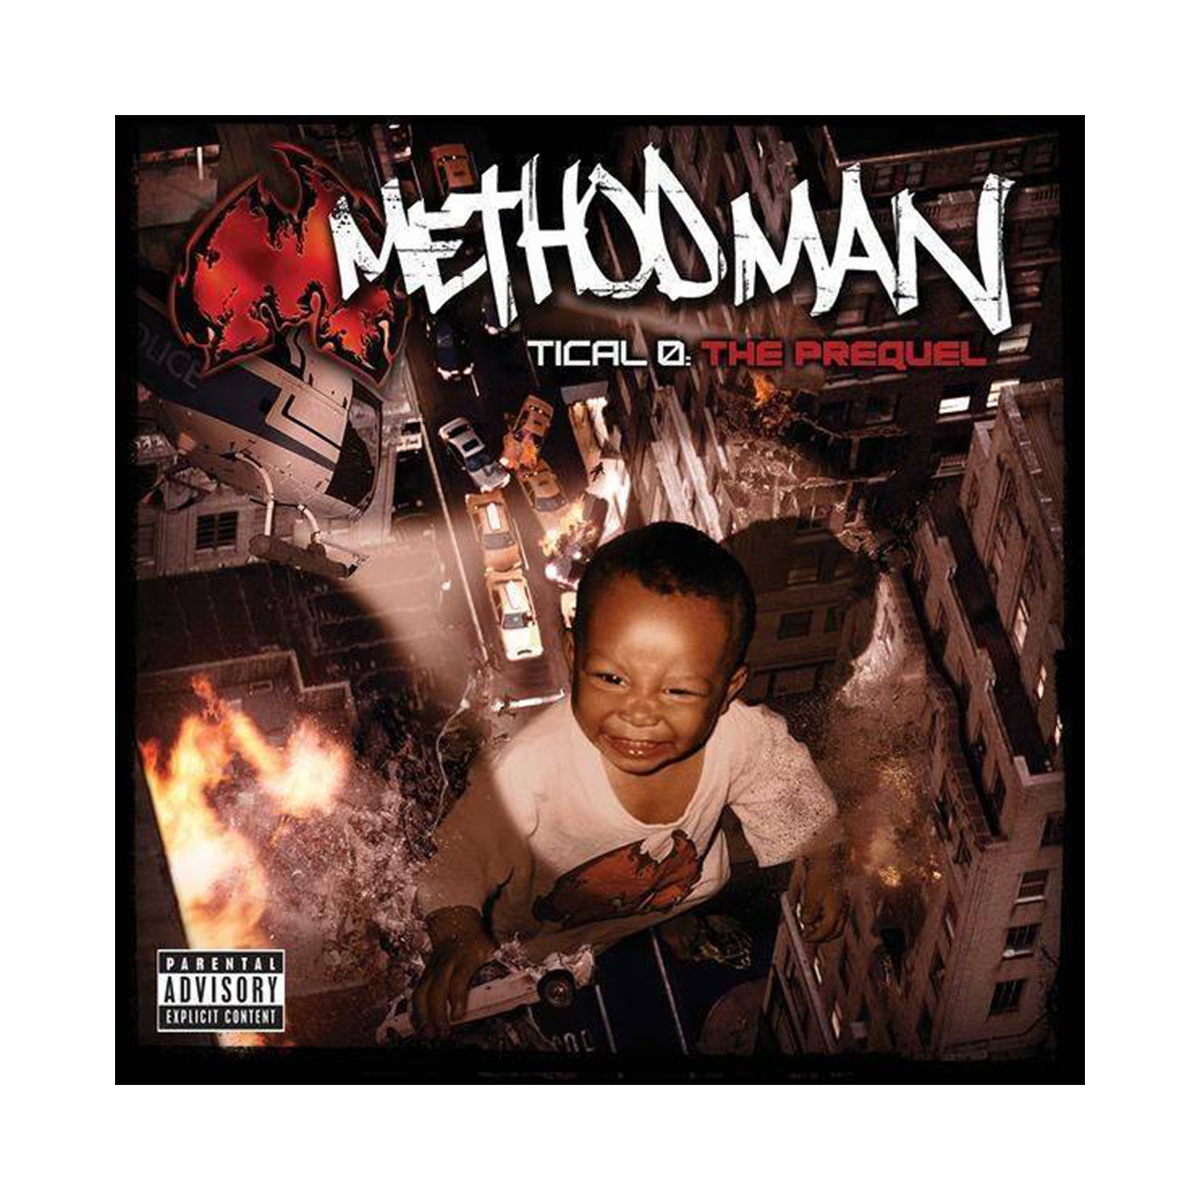 method man album